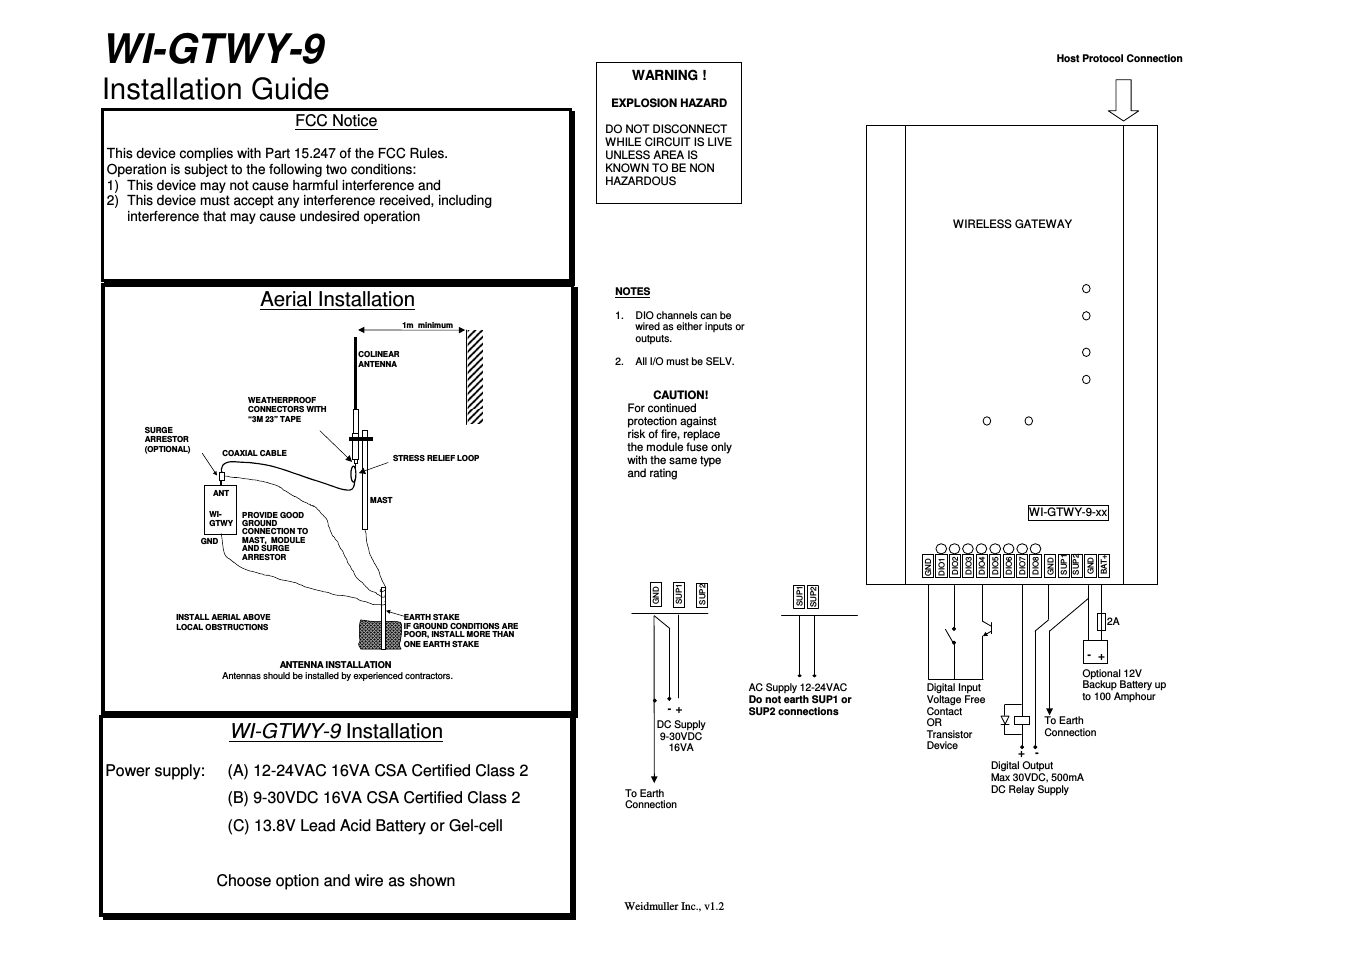 WI GTWY-9: Wireless Gateways v1.2